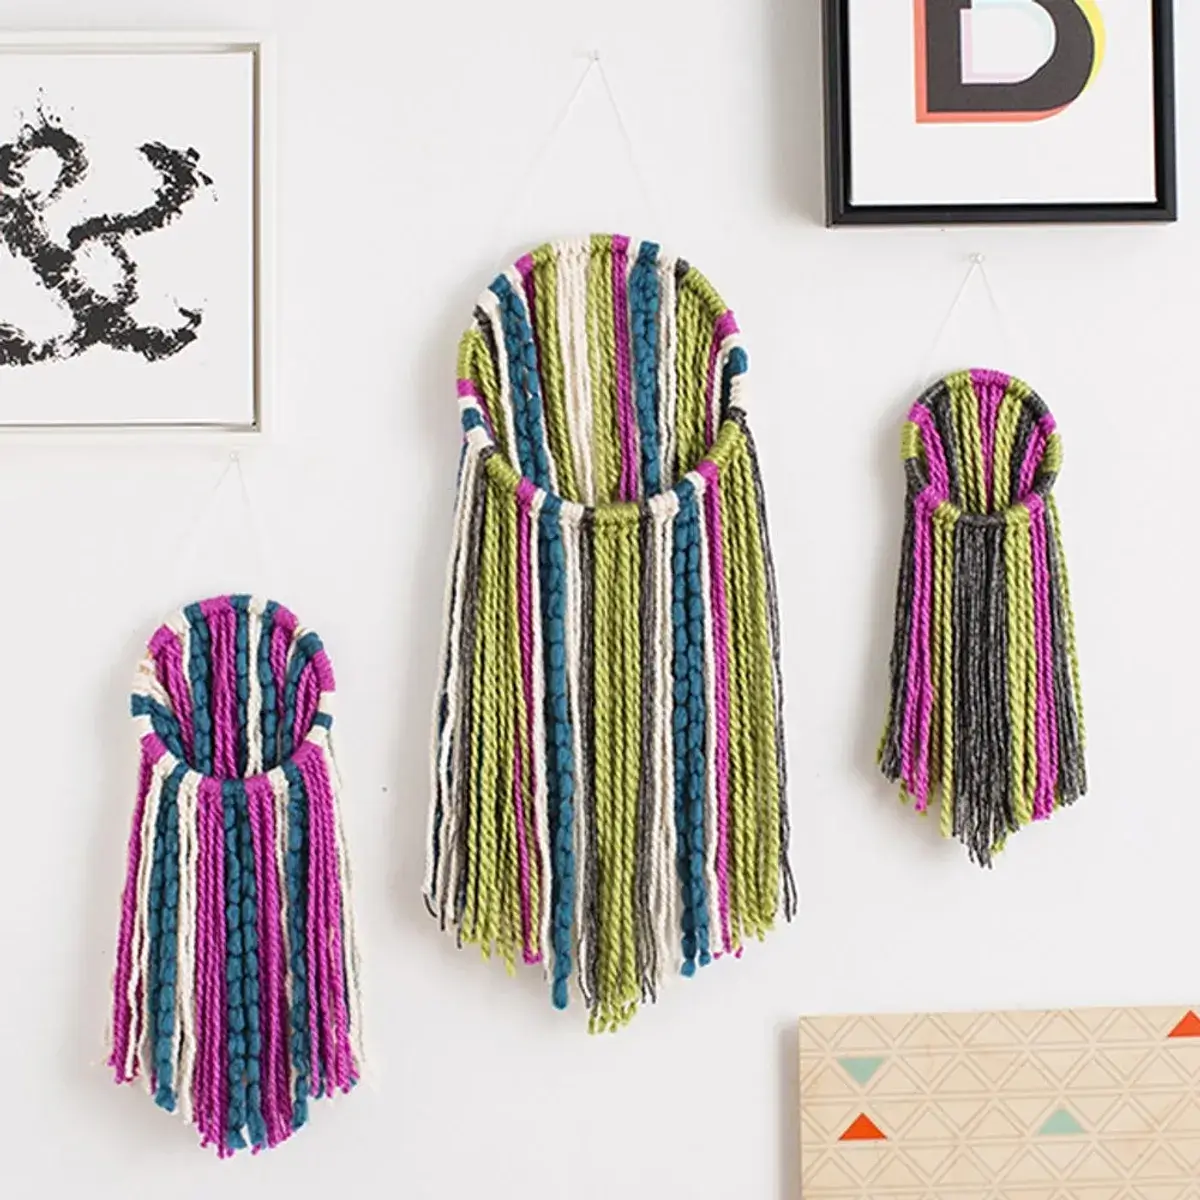 Modern Yarn Wall Hanging Craft Idea